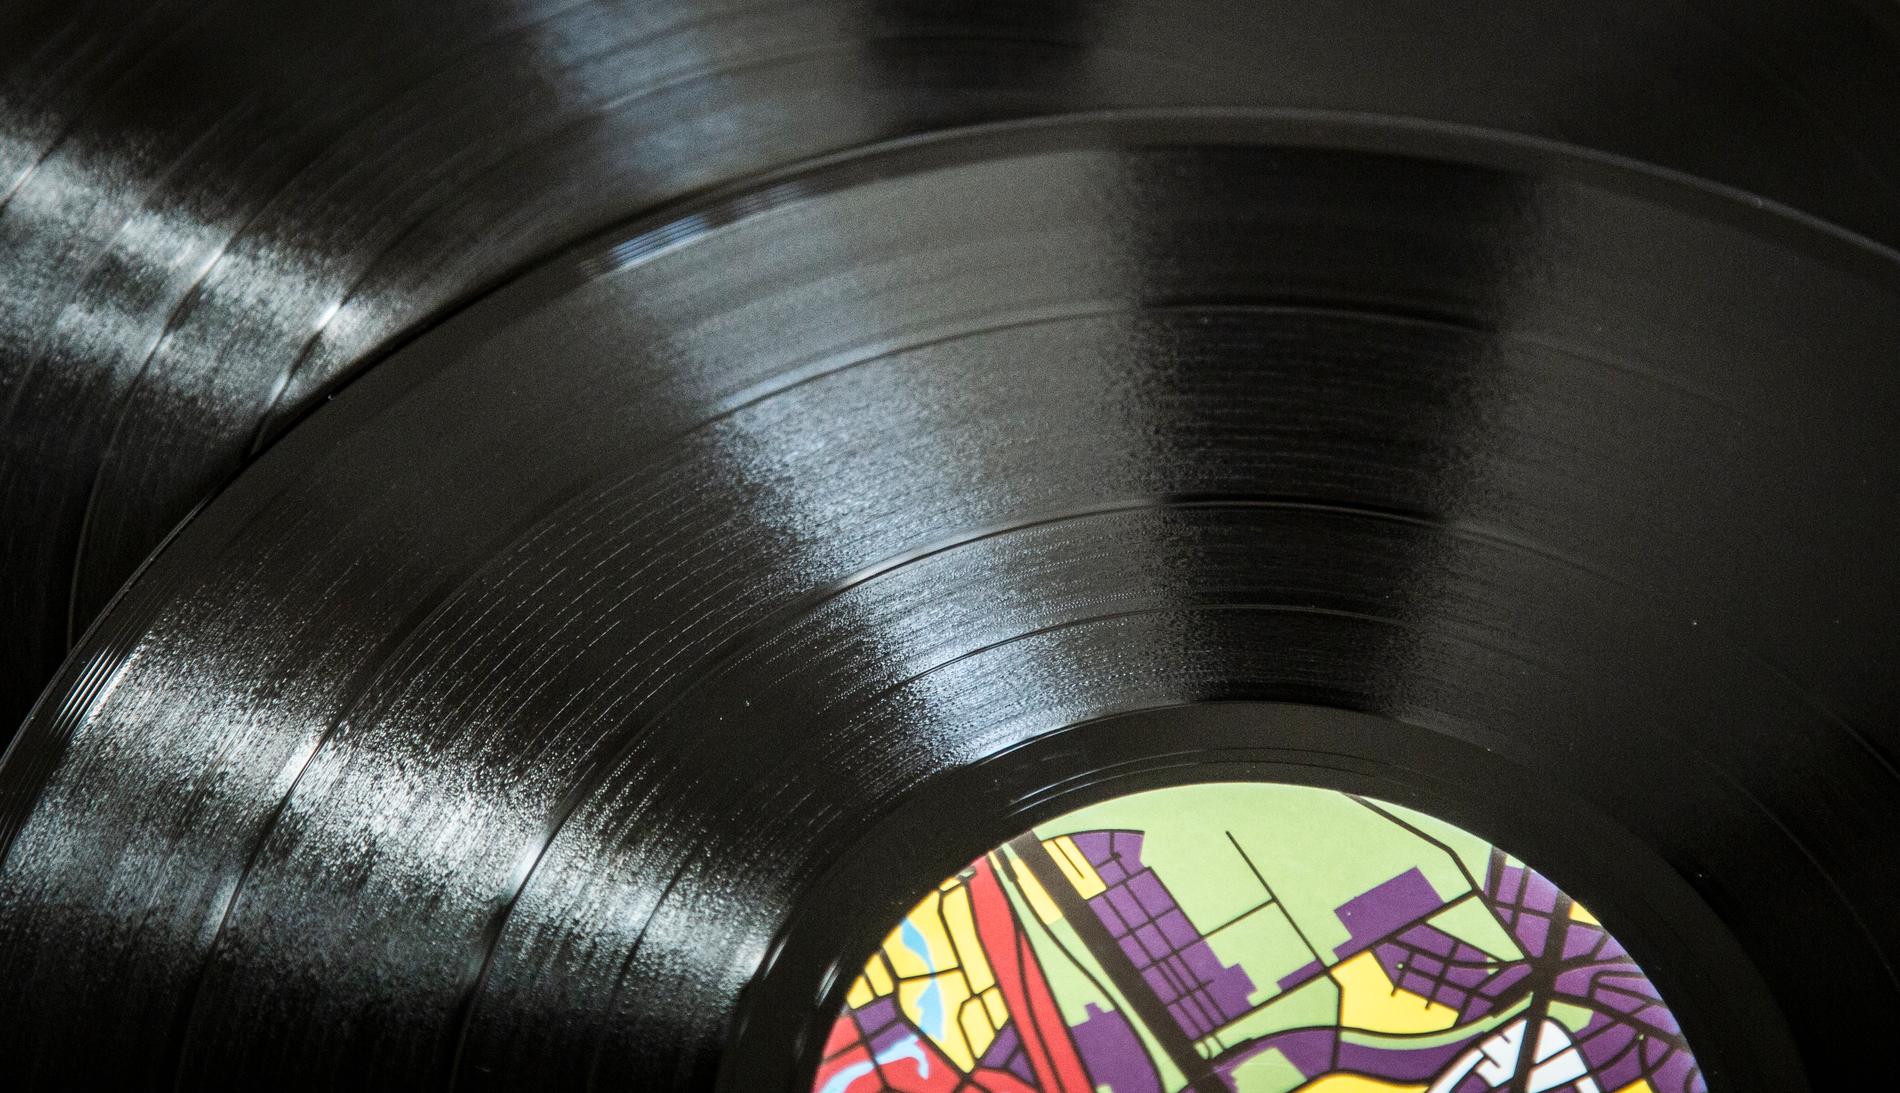 Vinylskivor har blivit alltmer eftertraktade, vilket gör dem stöldbegärliga. Arkivbild.